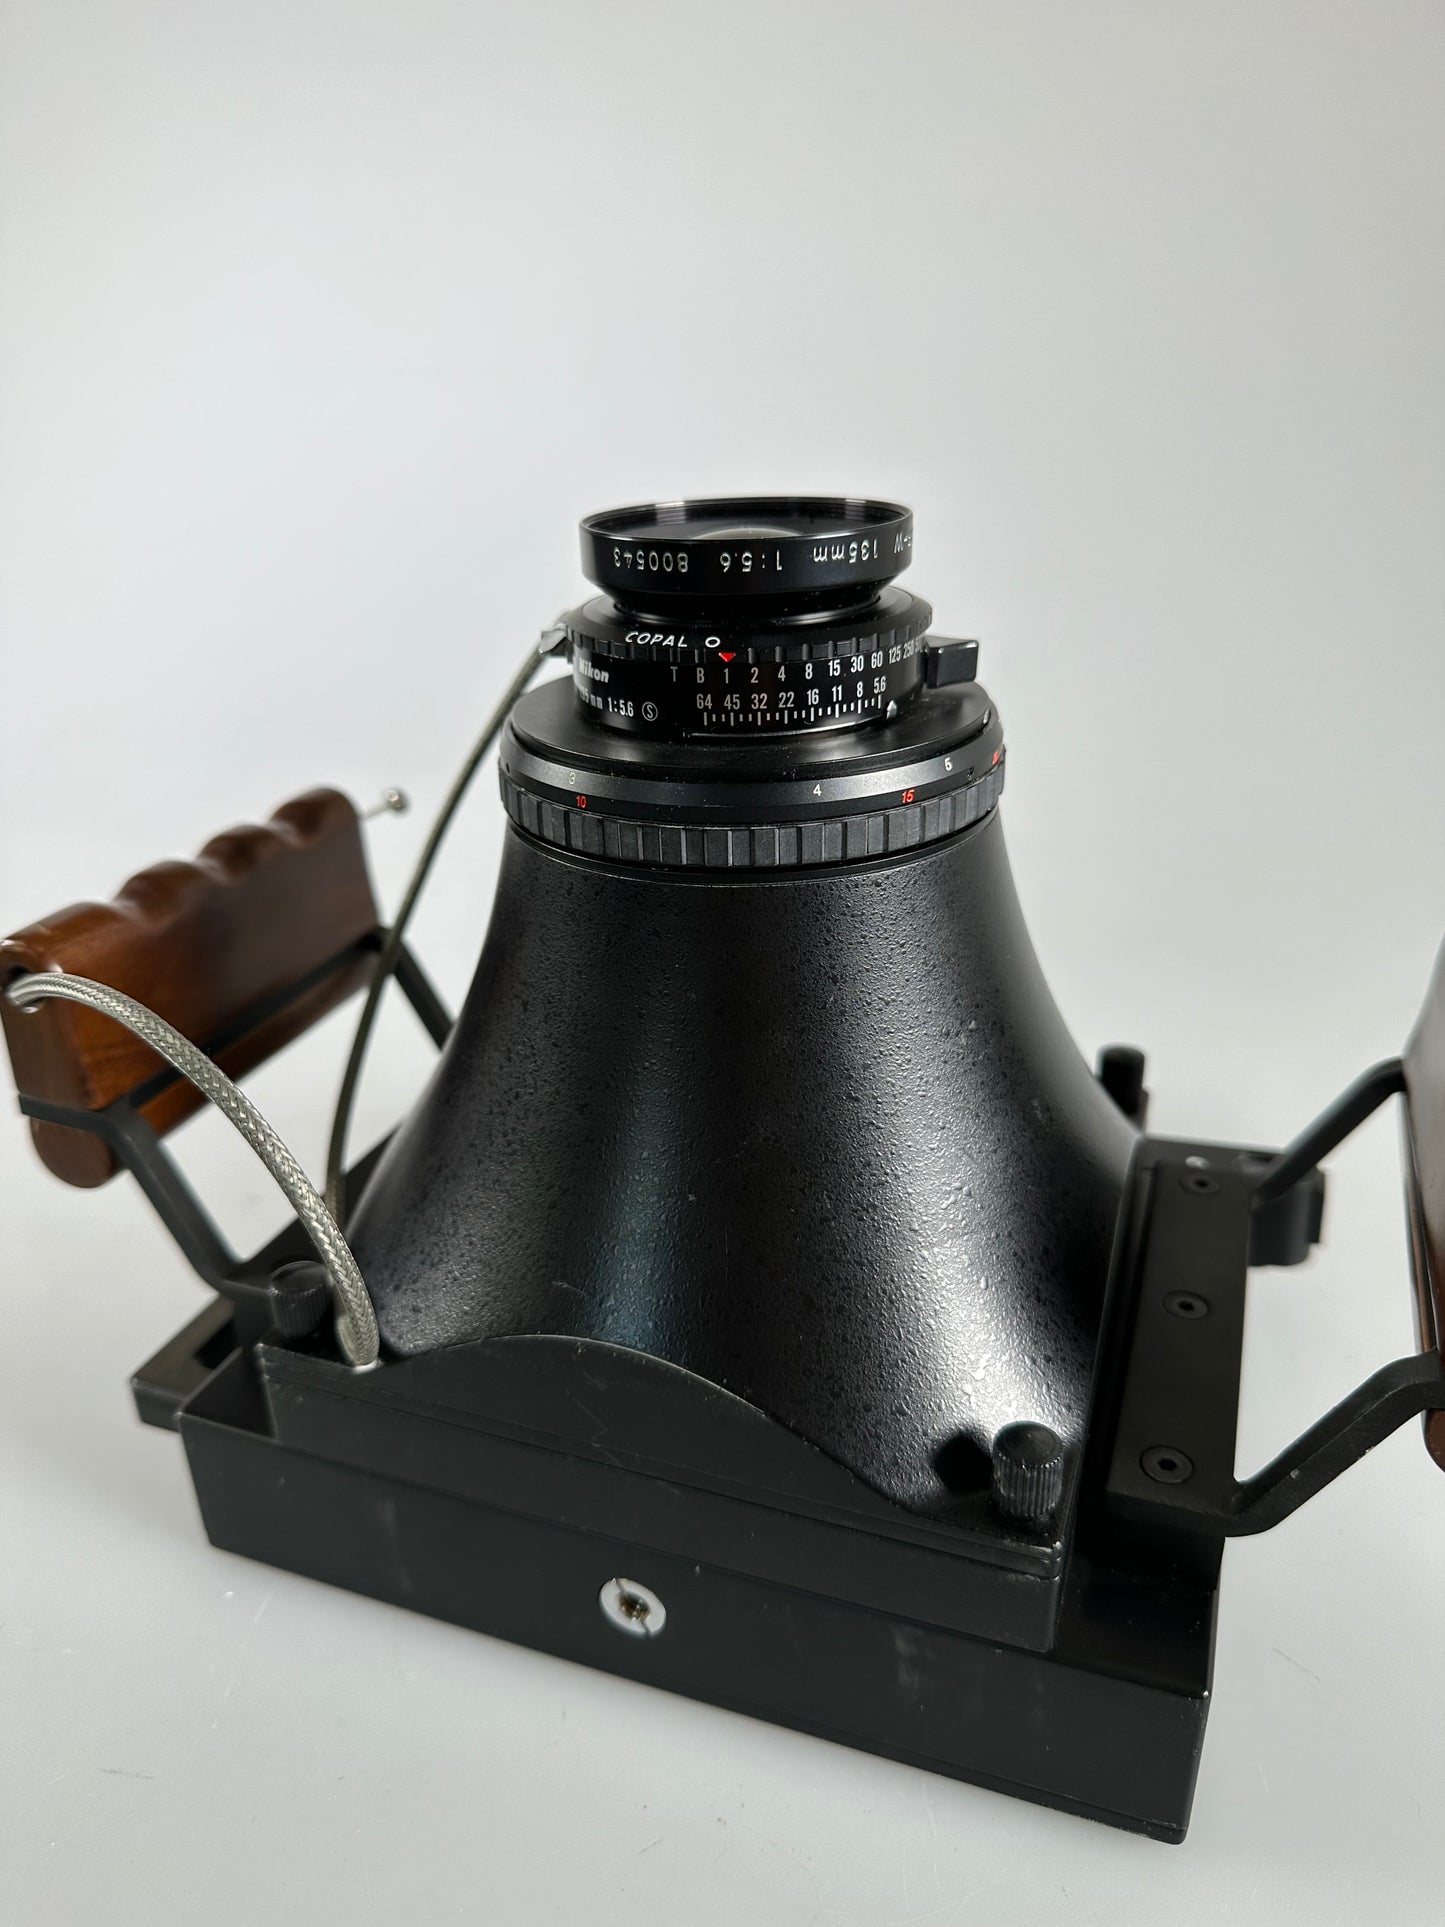 Fotoman 45PS 4x5 large format camera with Nikon 135mm f5.6 lens, finder, rangefinder